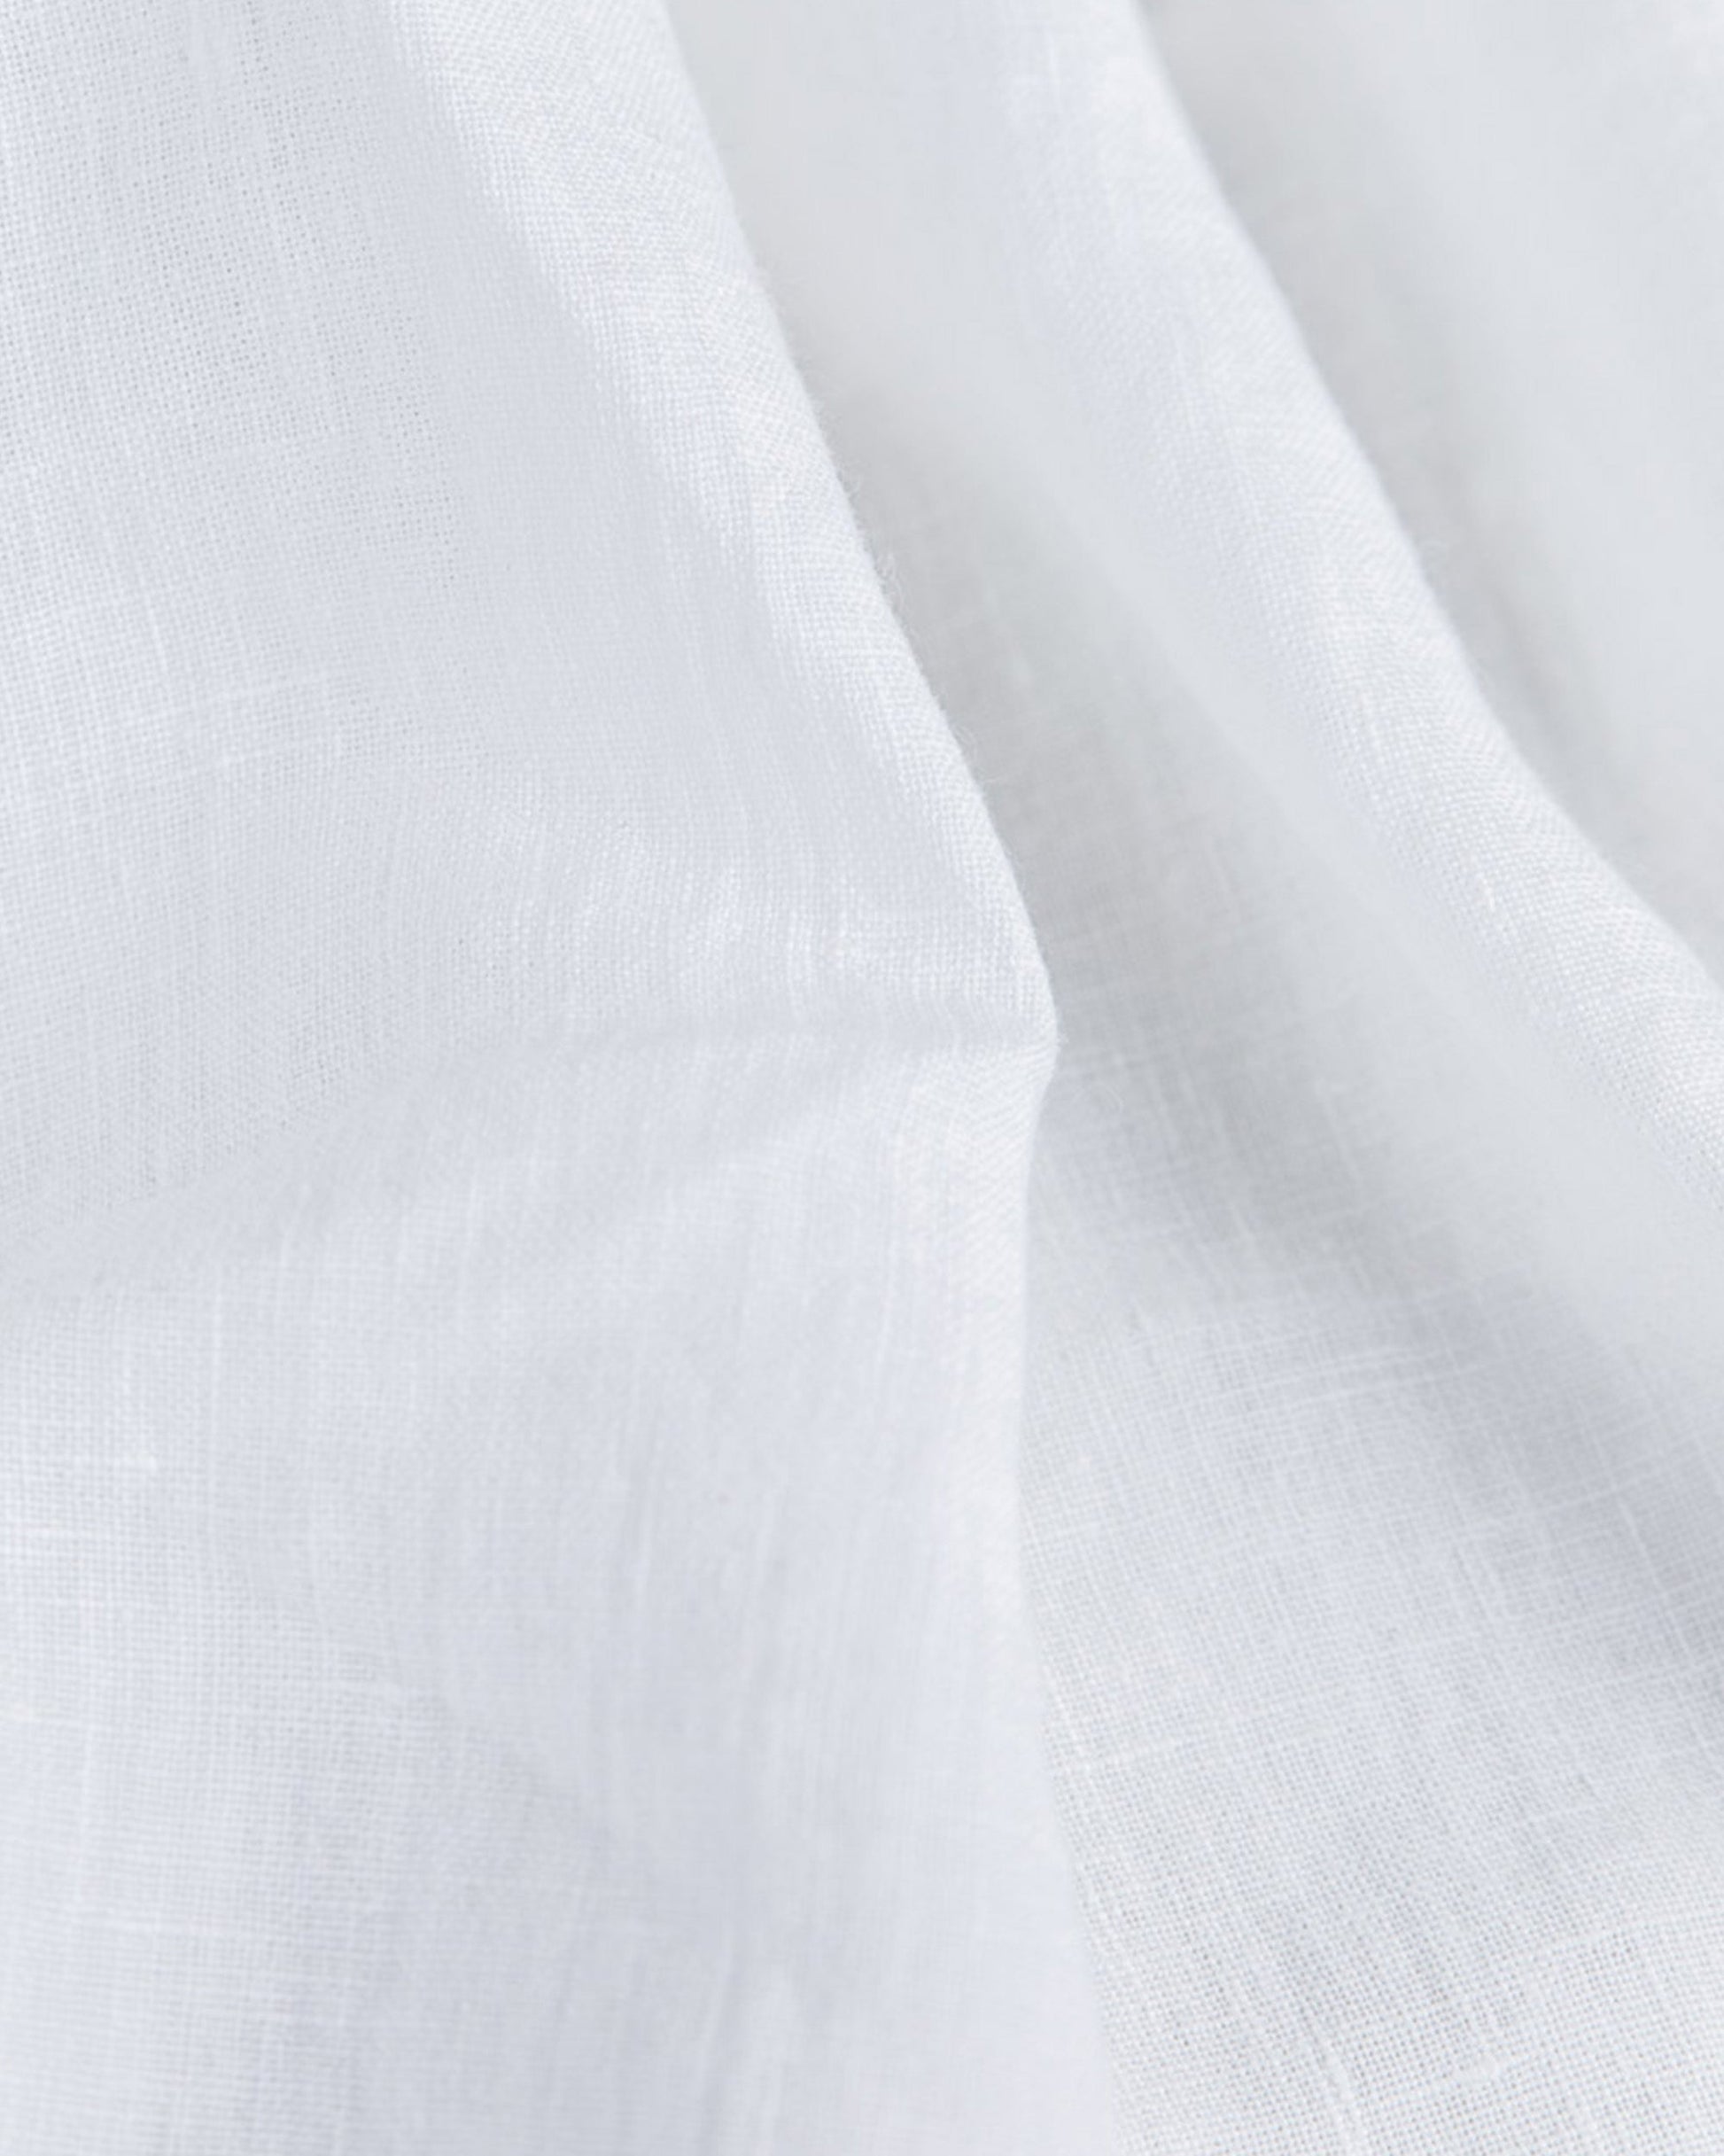 Custom size White linen flat sheet - MagicLinen